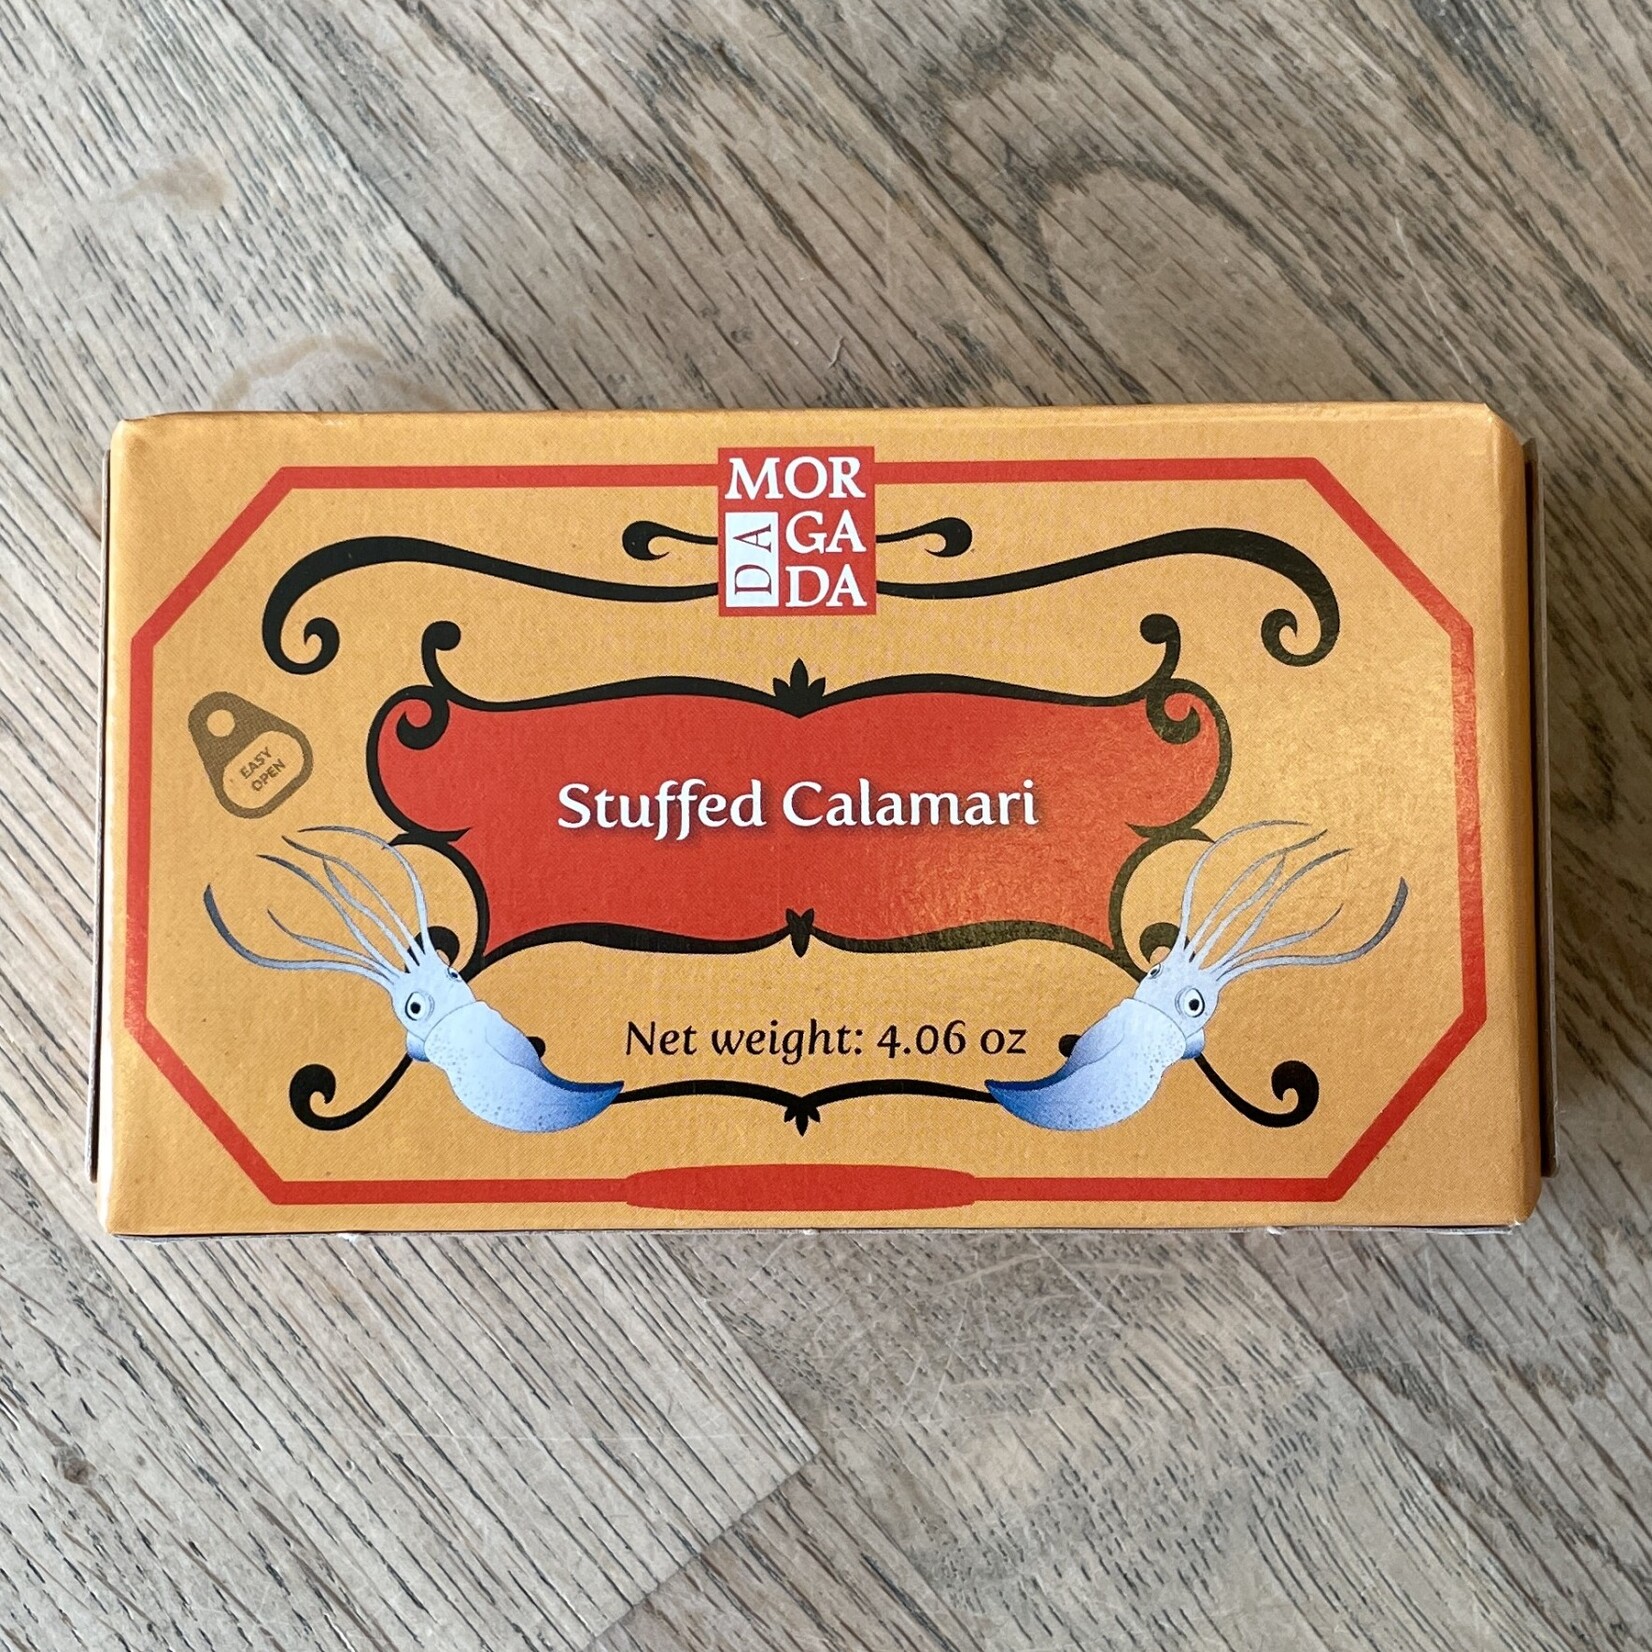 Portugal Da Morgada Stuffed Calamari 115g